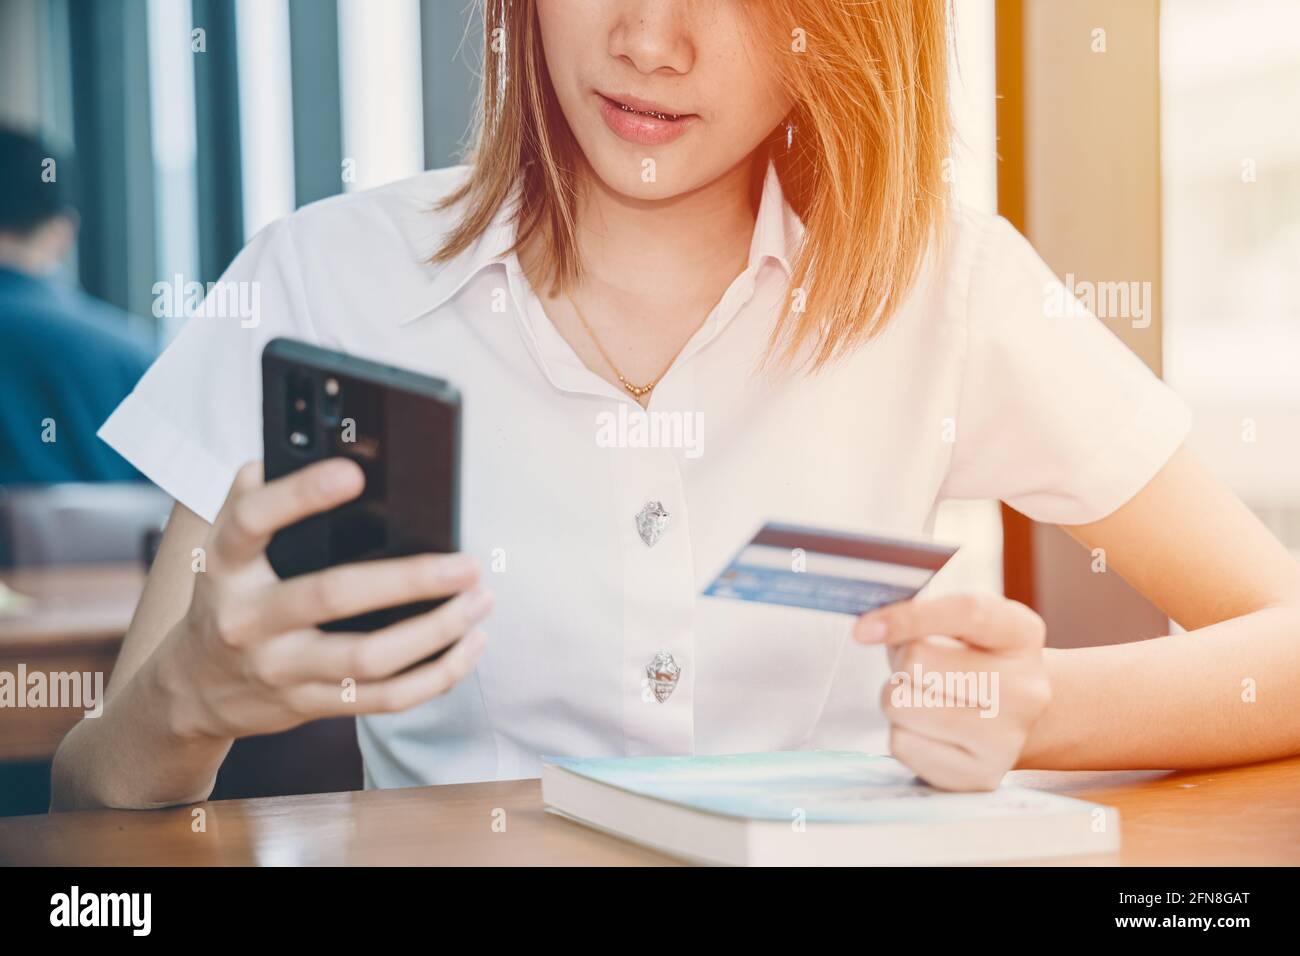 ragazza teen utilizzando smartphone per lo shopping online carta di credito piattaforma di pagamento università modello uniforme. Foto Stock